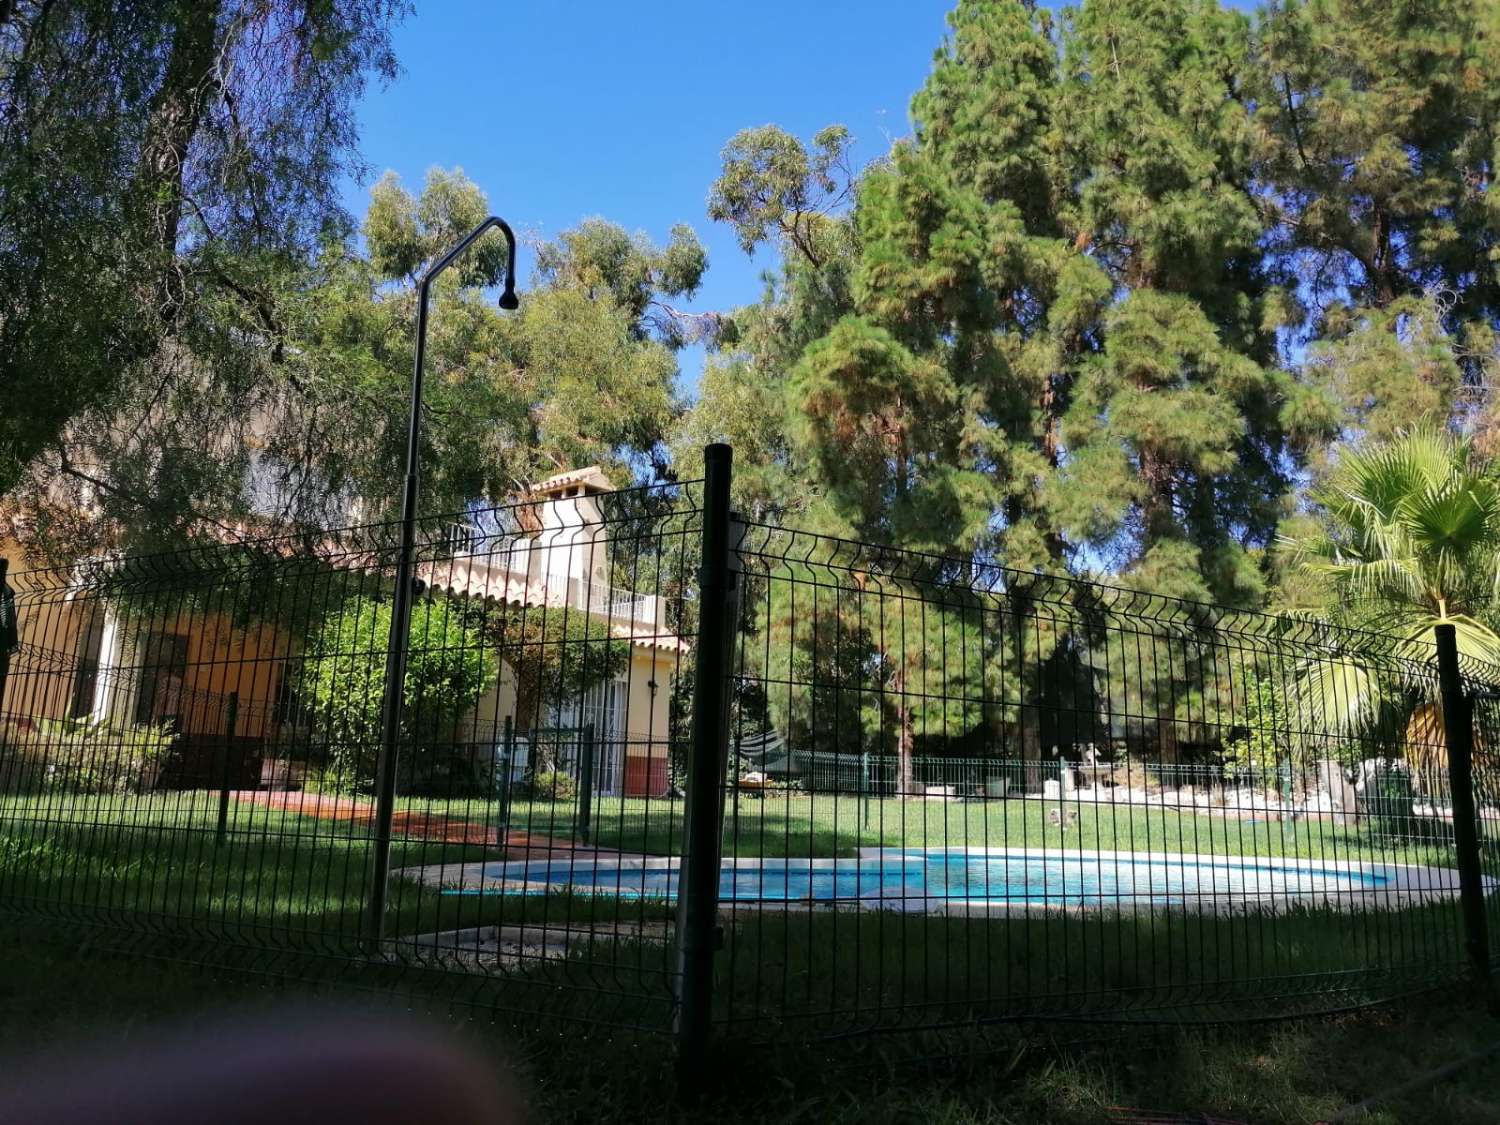 Villa for sale in Torrequebrada (Benalmádena)